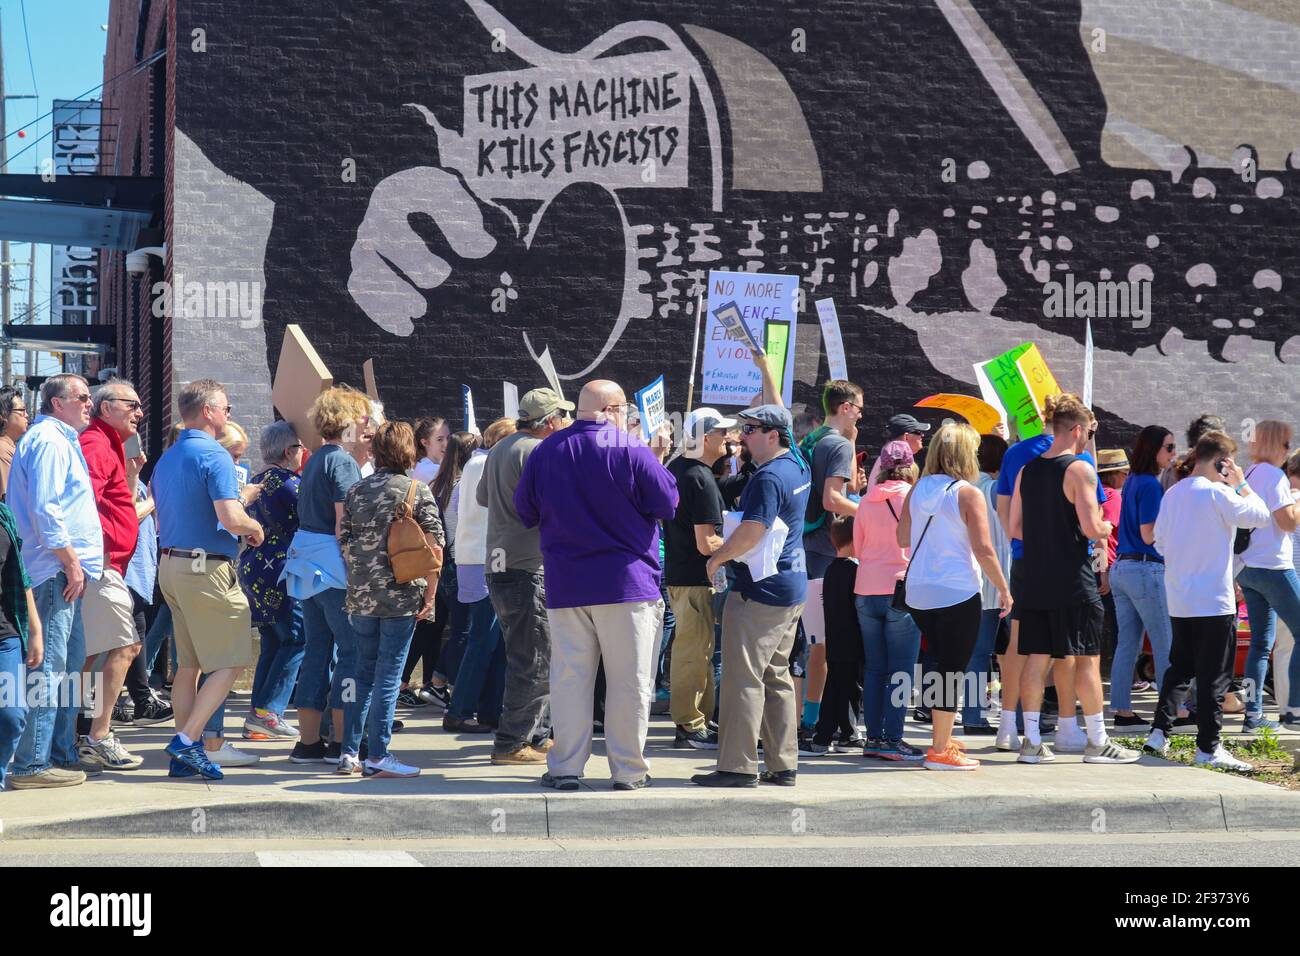 3 24 2018 Tulsa Oklahom USA - Protestler gehen vorbei Holz Guthrie Wandbild, das sagt, Diese Maschine tötet Faschisten Stockfoto